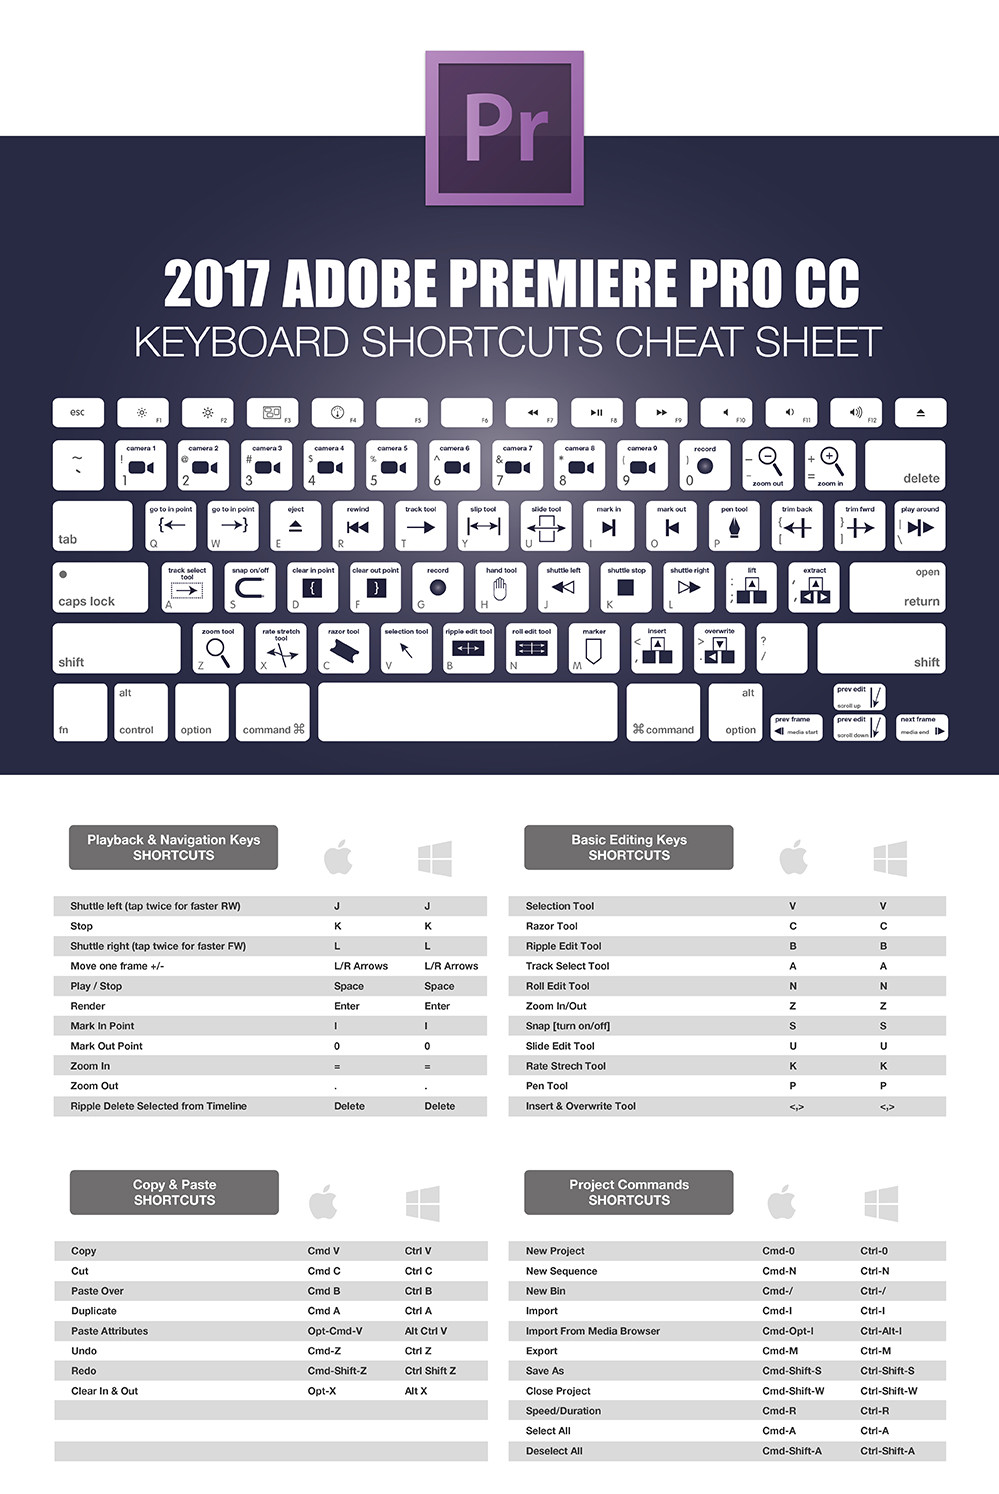 adobe premiere pro cc 2017 shortcut keys pdf download